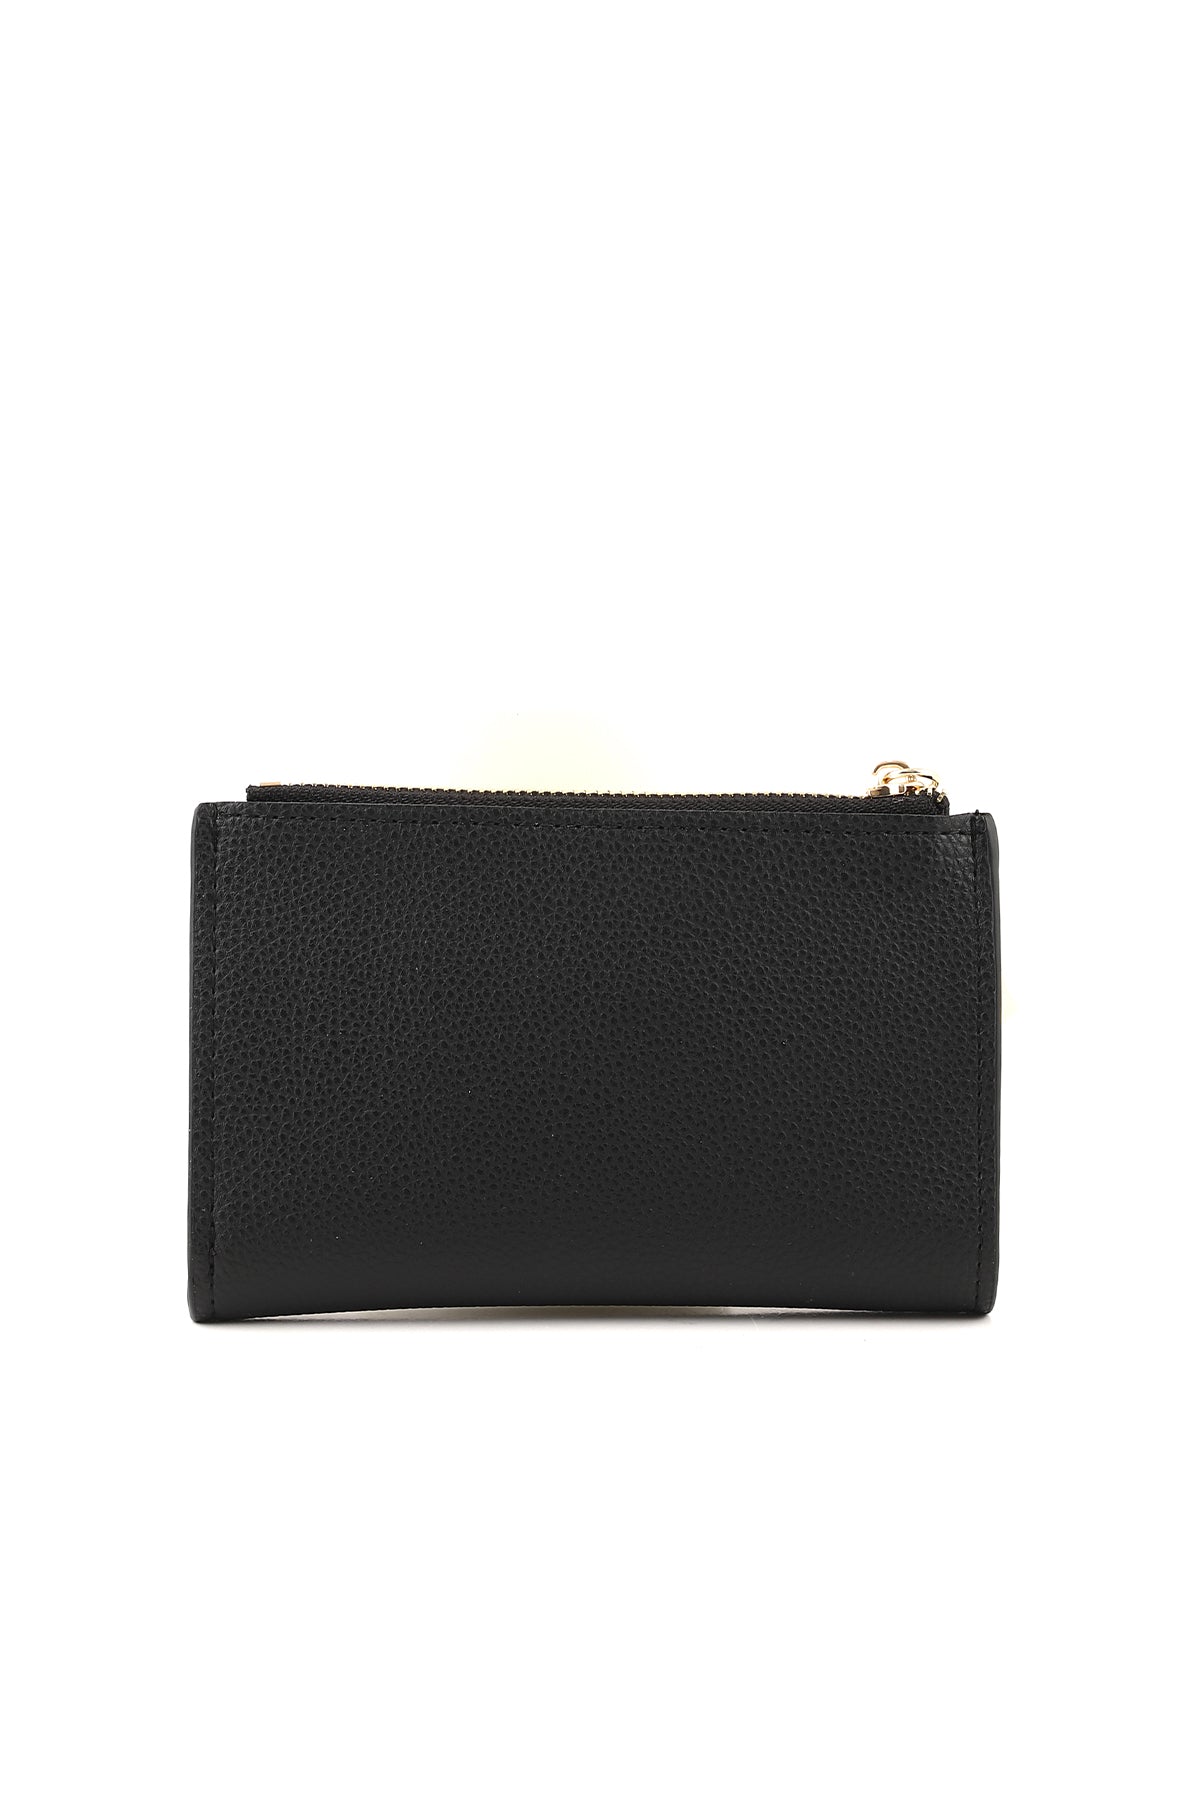 Wristlet Wallet B26042-Black